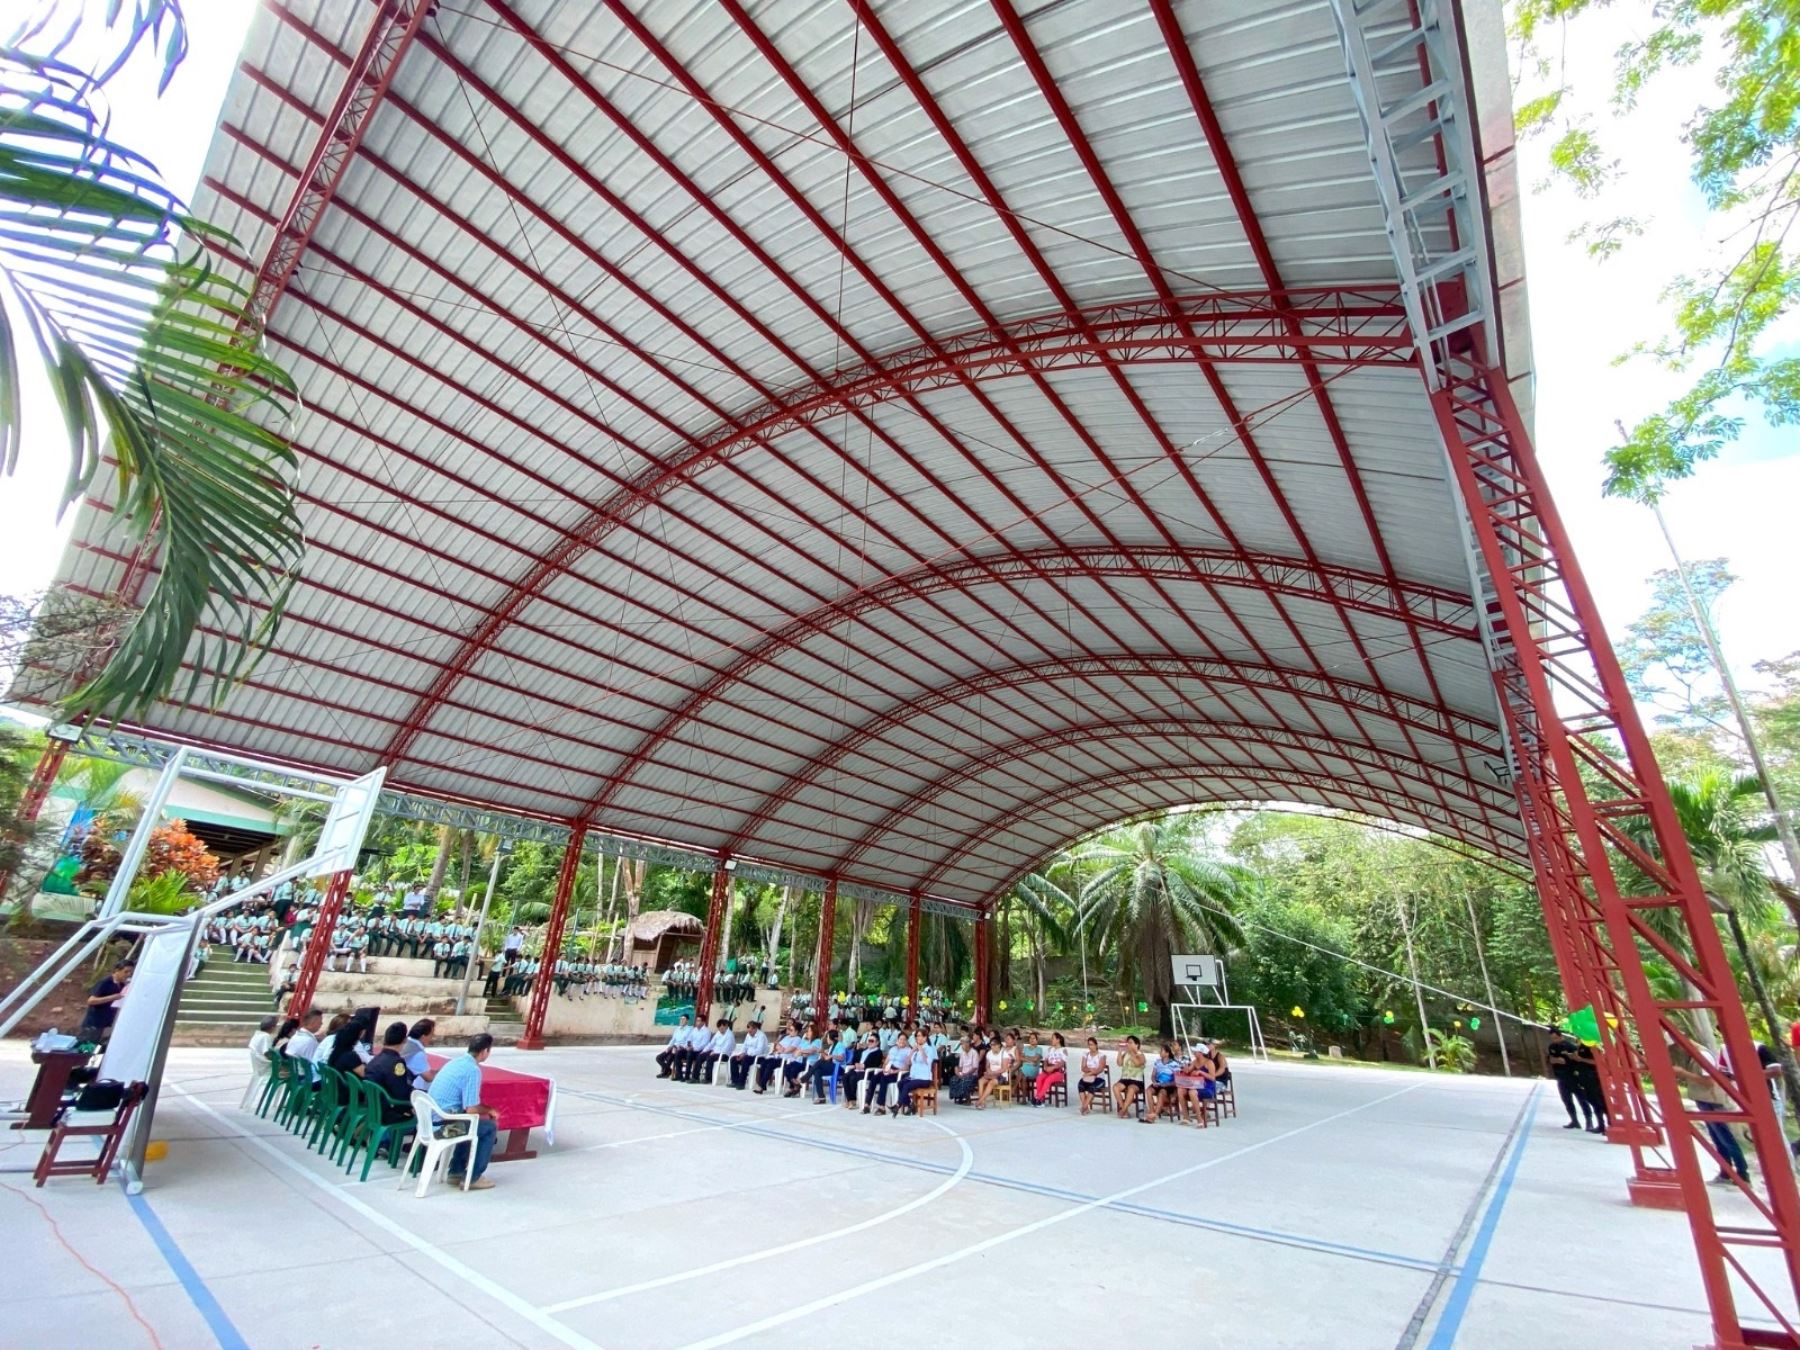 Más de 5,000 estudiantes de 11 colegios de la región San Martín se beneficiaron con la implementación de techos metálicos que los protegerá del fuerte sol o de las lluvias. ANDINA/Difusión